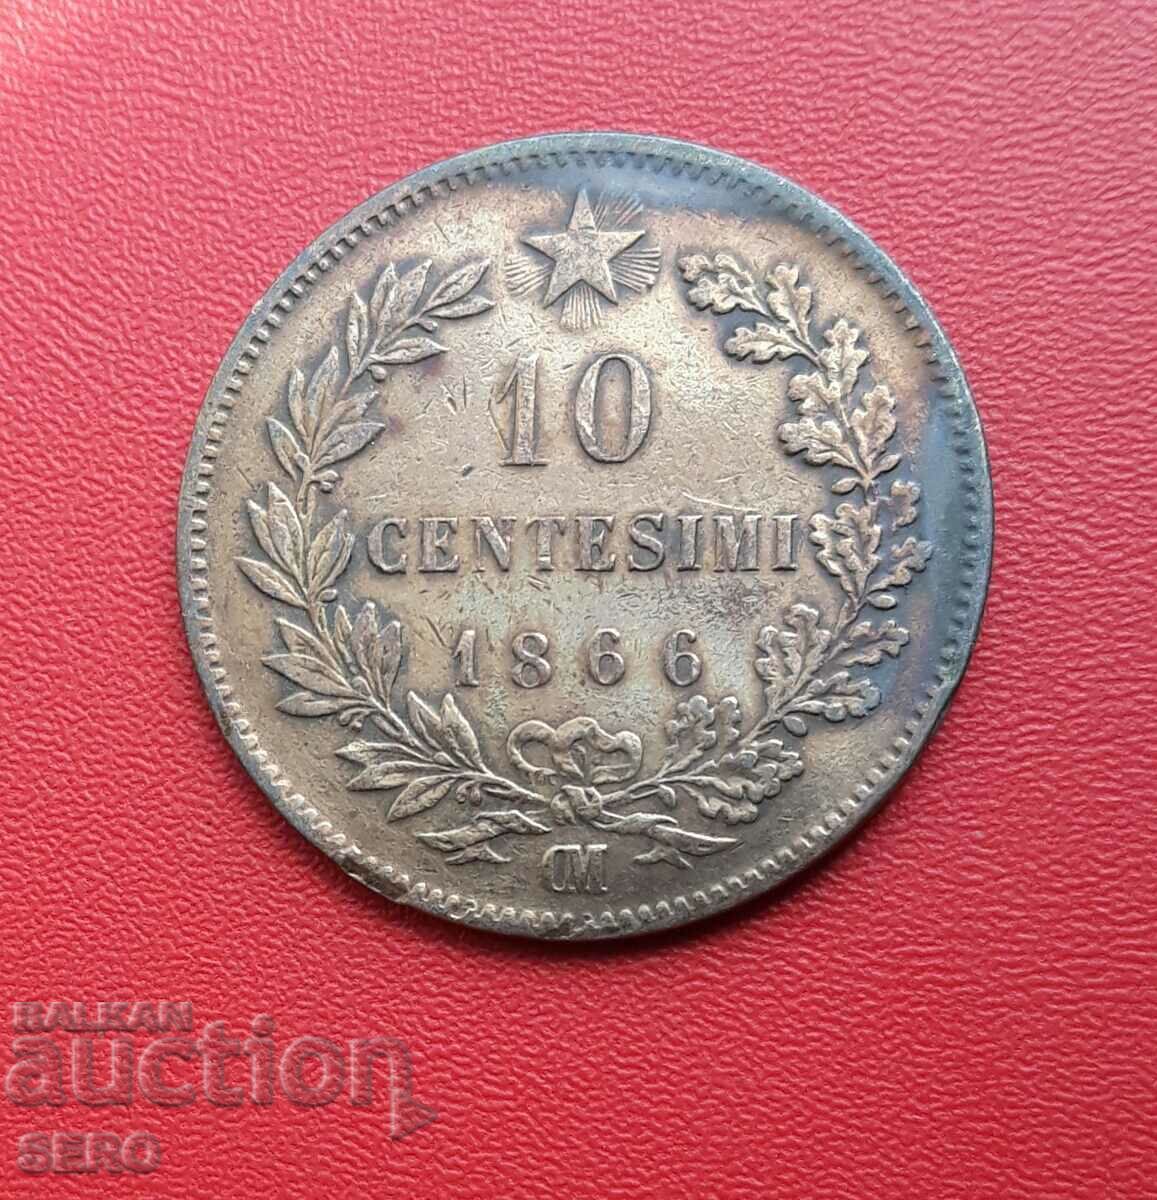 Ιταλία-10 σεντς 1866